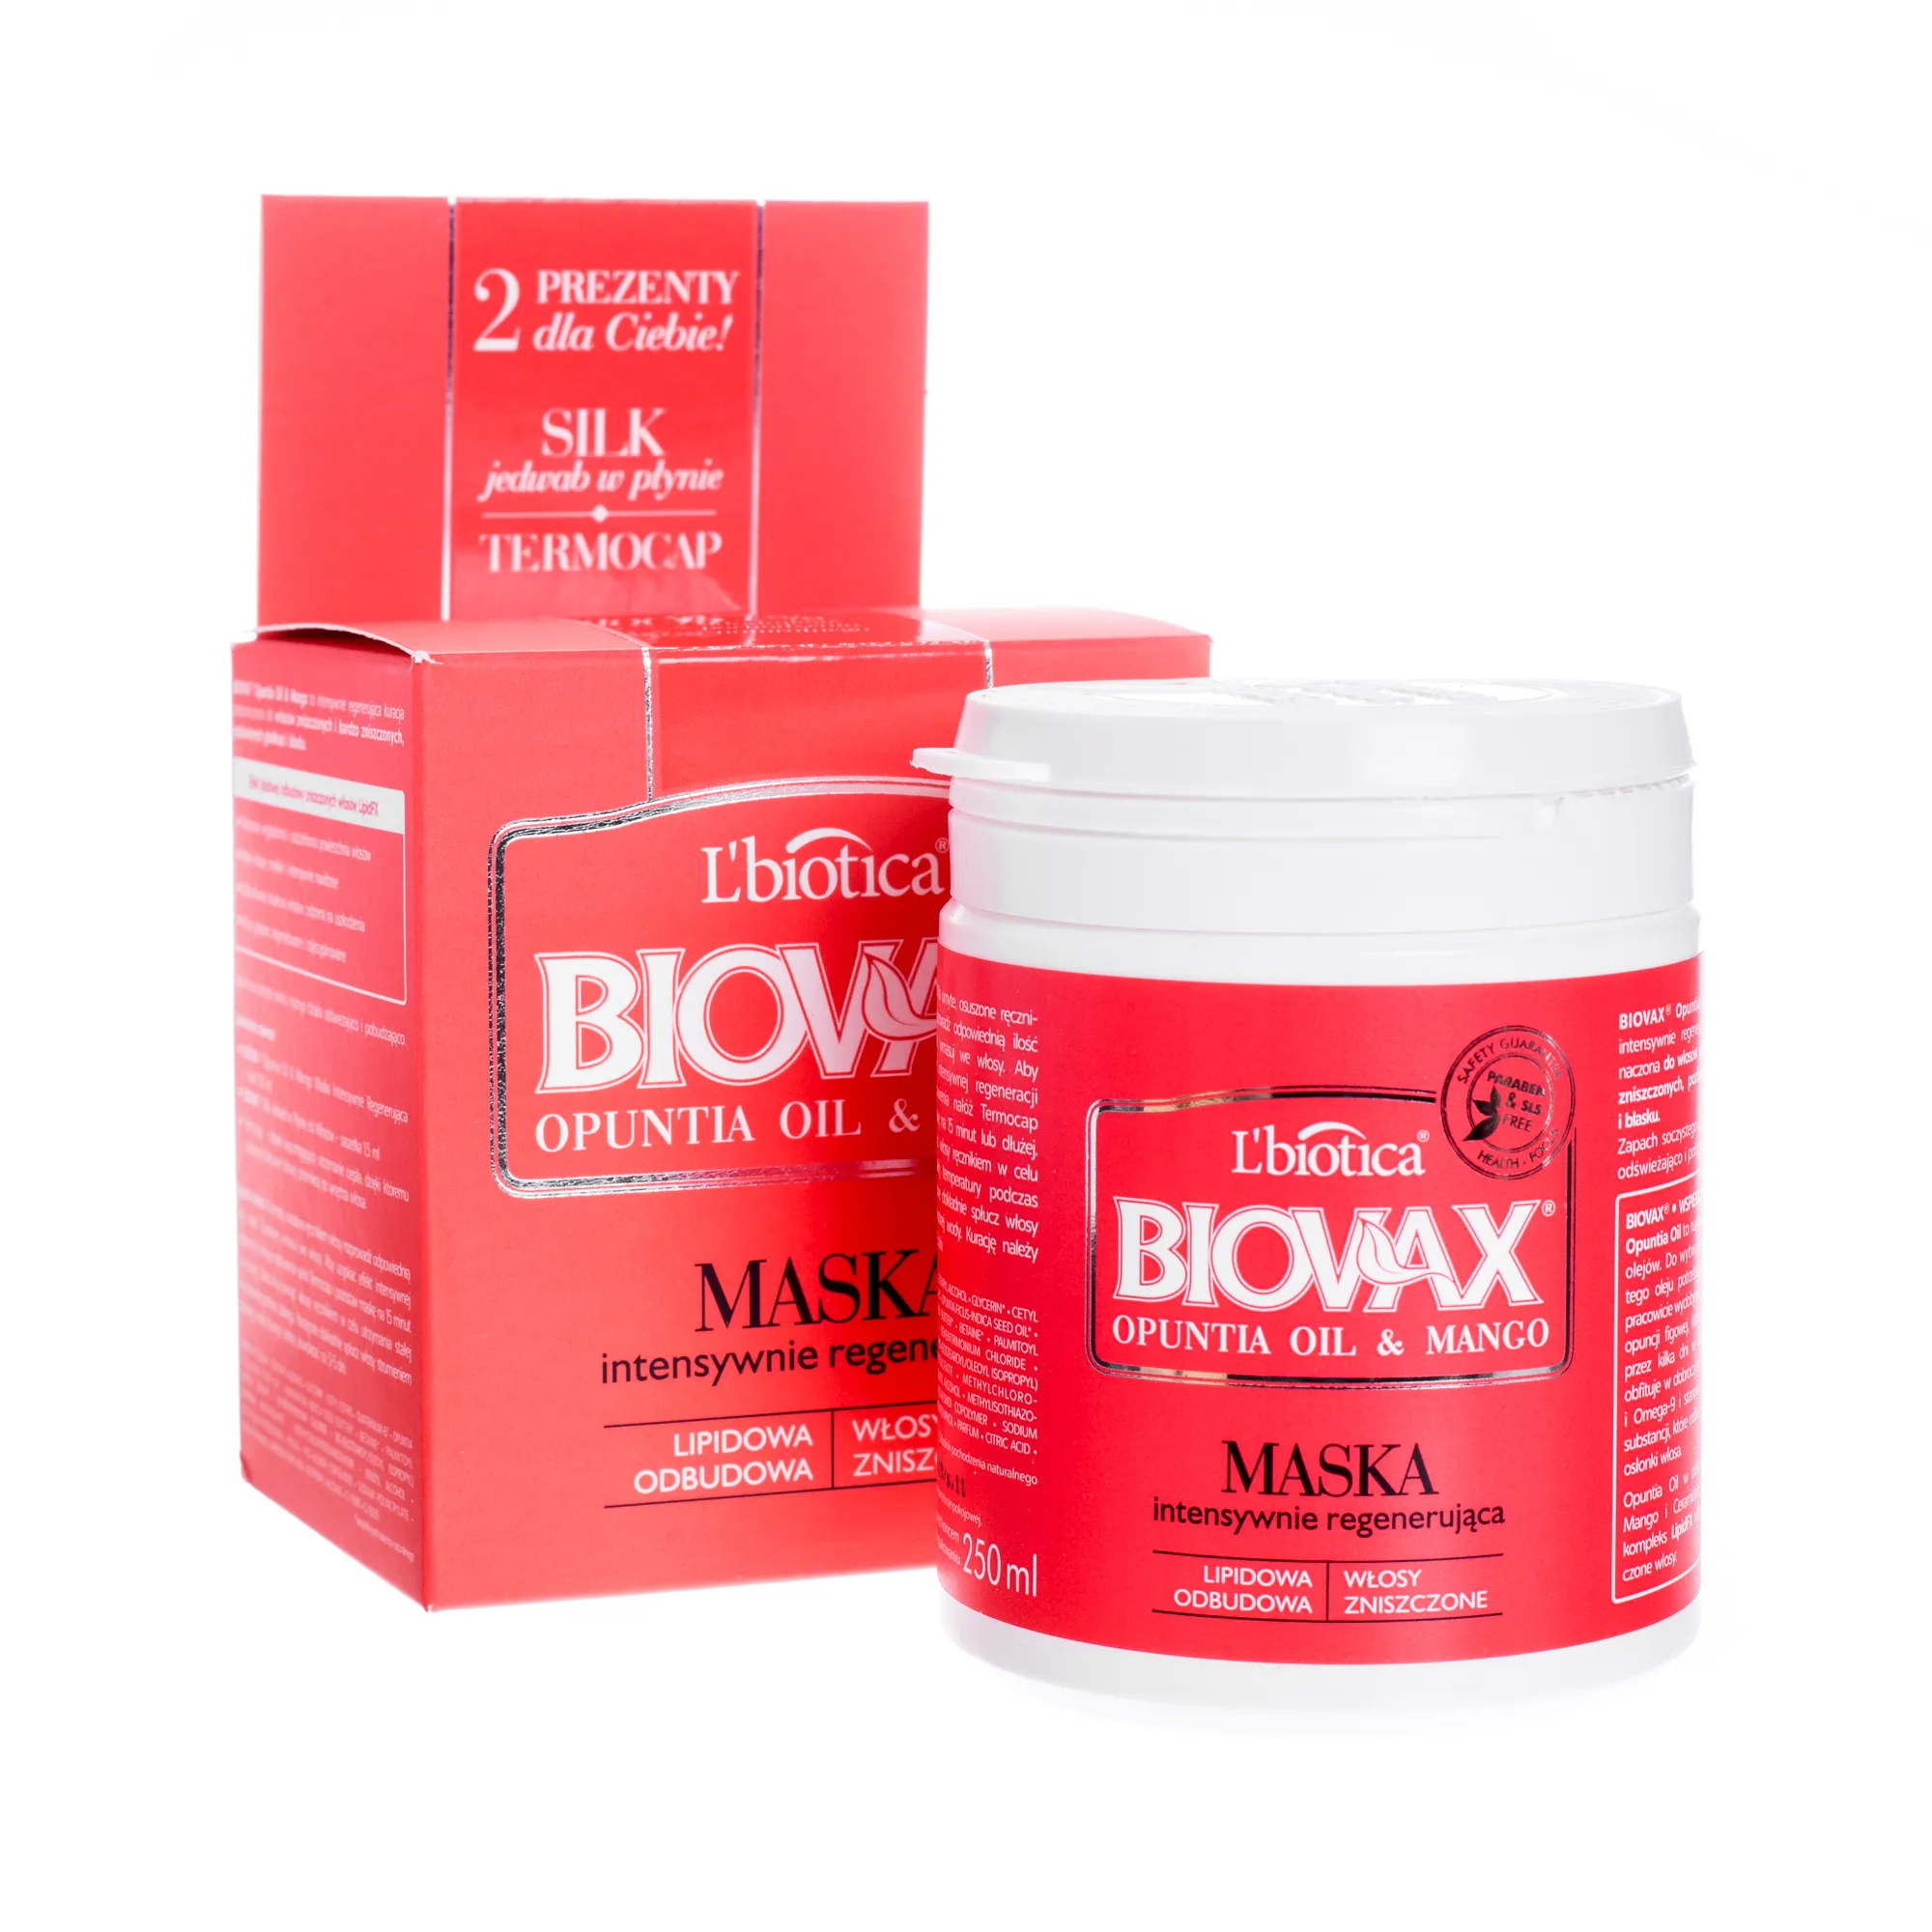 L'biotica Biovax, maska intensywnie regenerująca, opuntia oil & mango, 250 ml